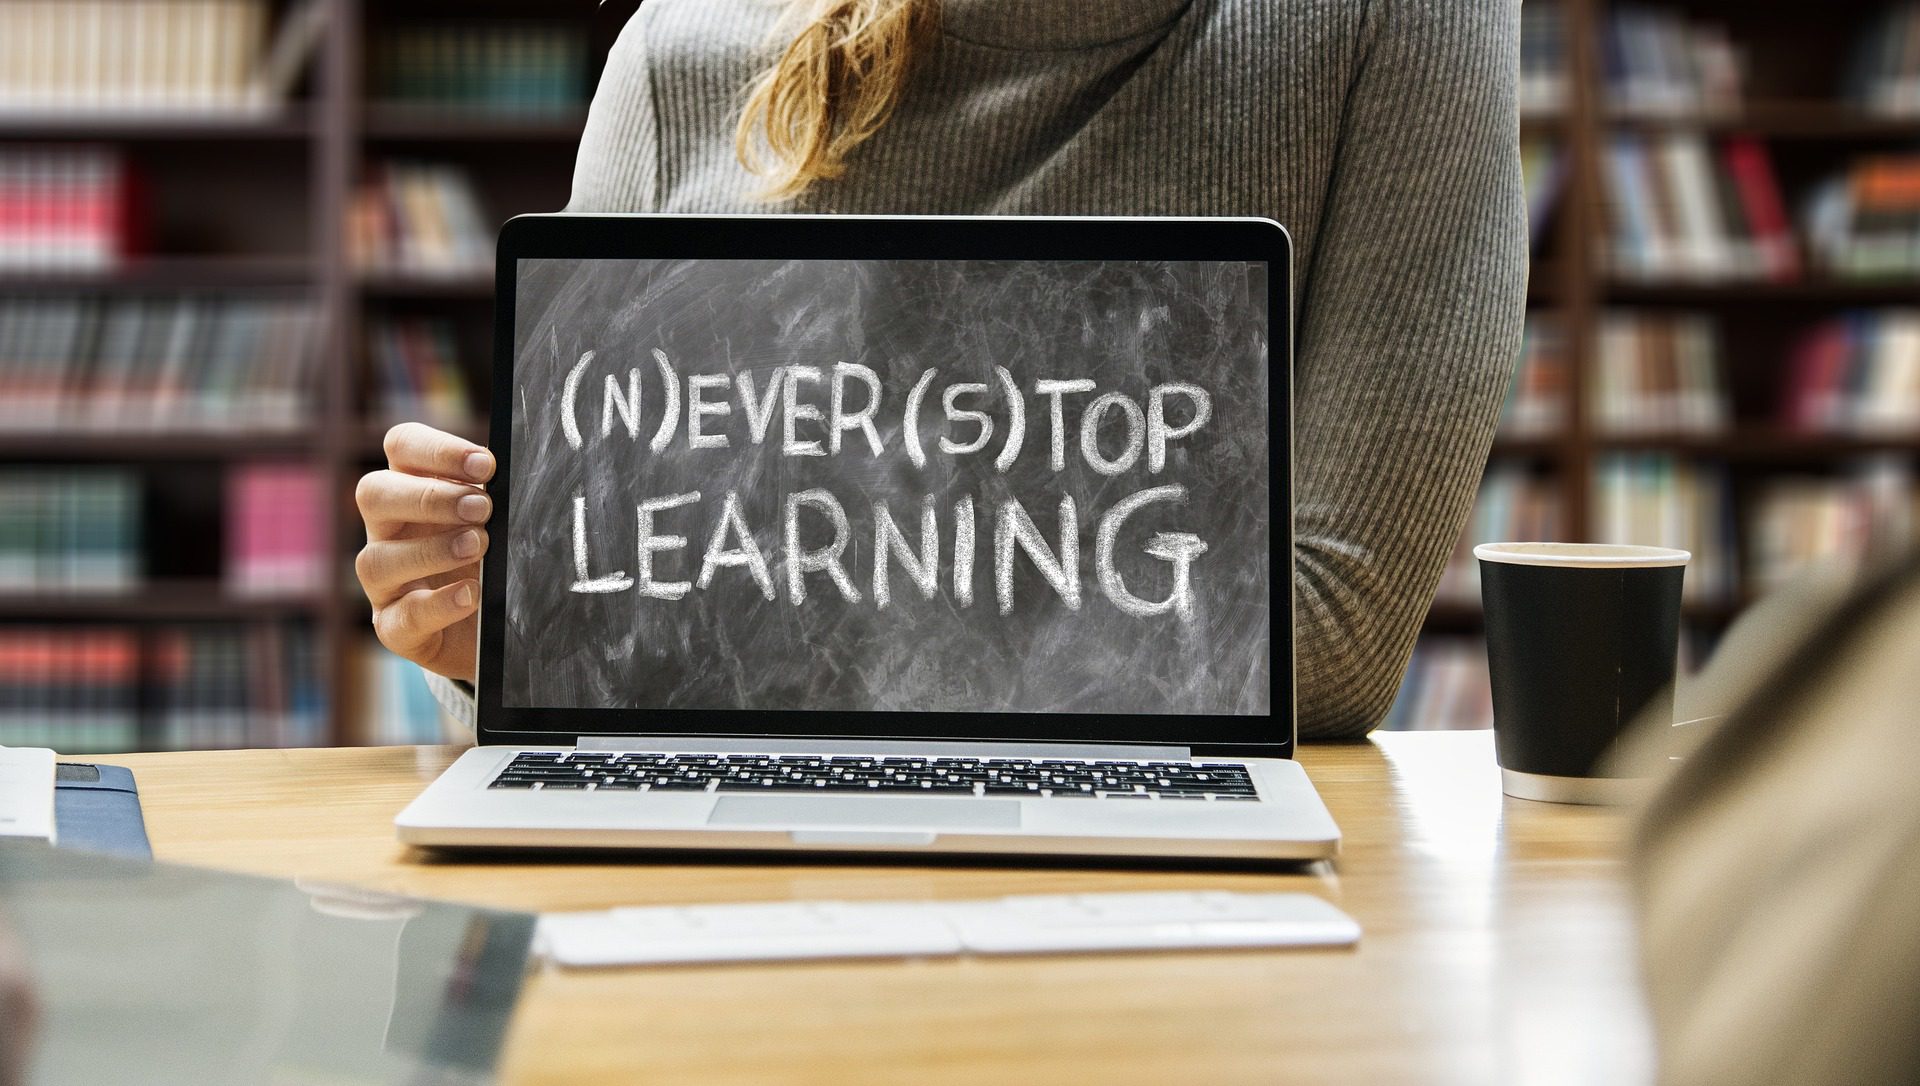 Un ordinateur portable qui ressemble à un tableau noir où il est écrit "Never Stop Learning" avec N et S entre parenthèses.